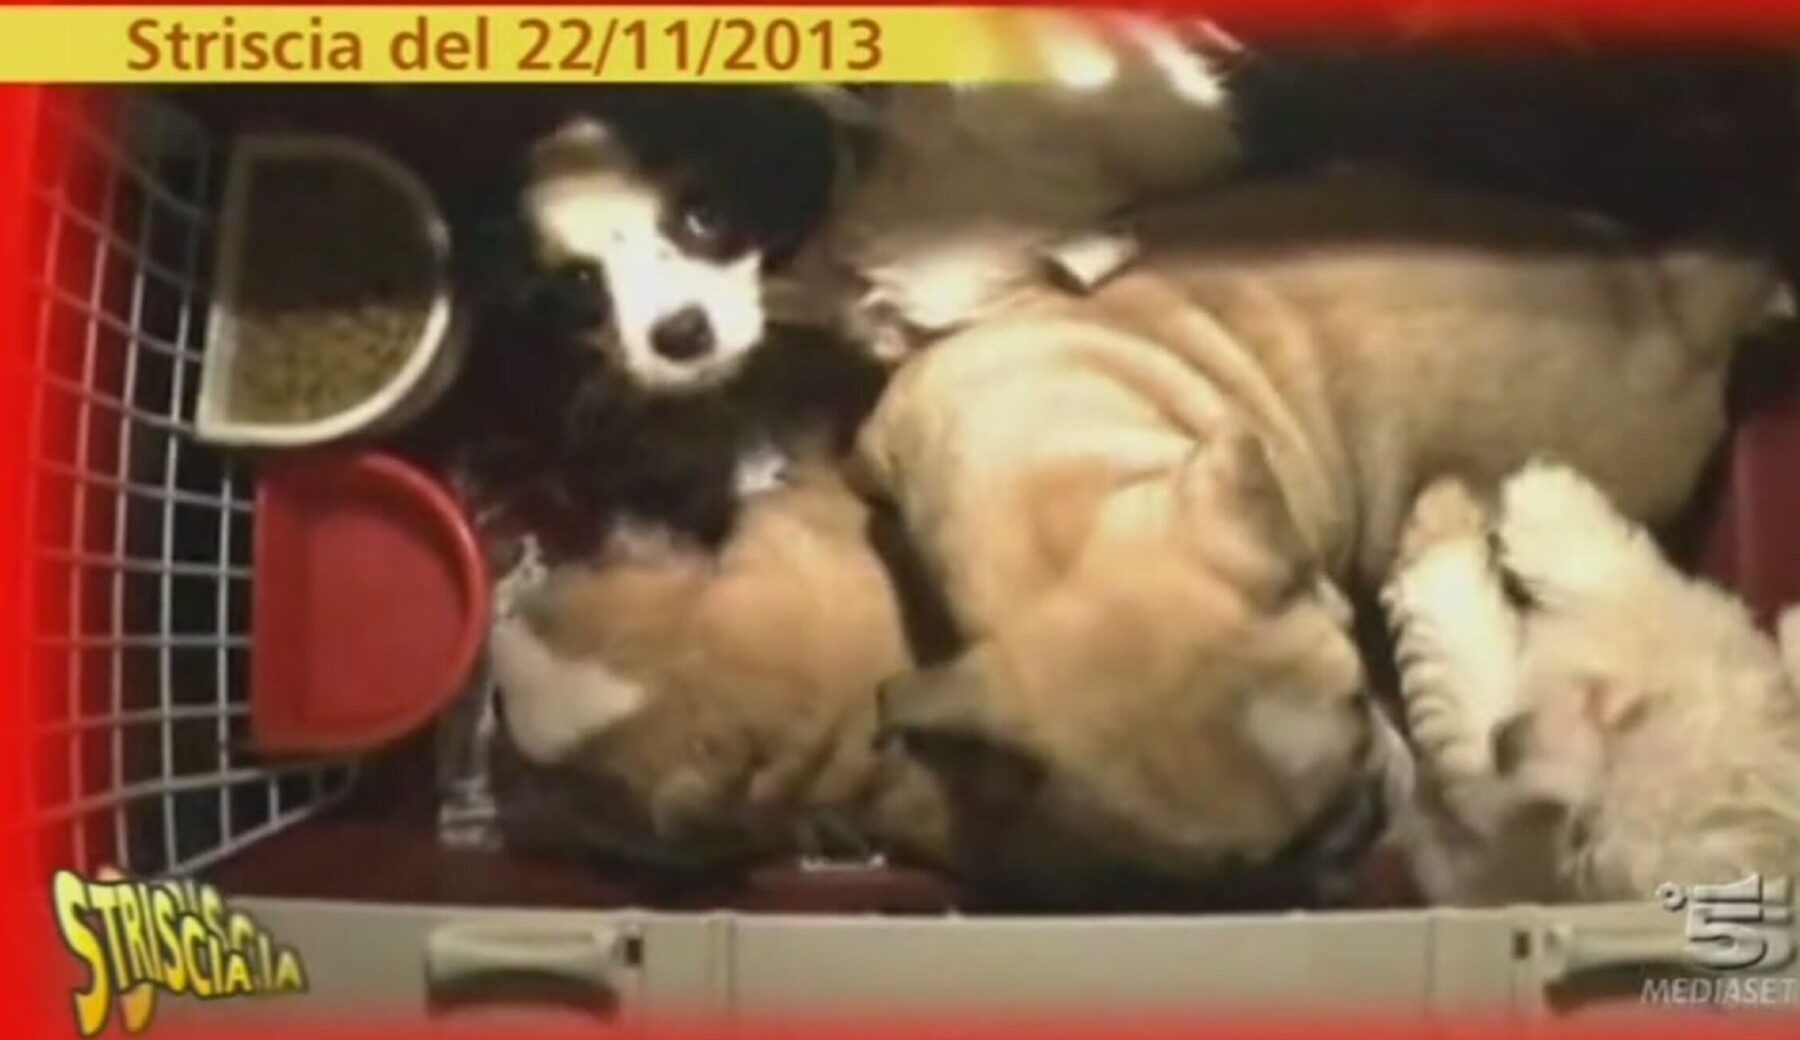 Trafficanti internazionali di cani: dopo le denunce di Striscia, condannati tutti e 12 gli imputati